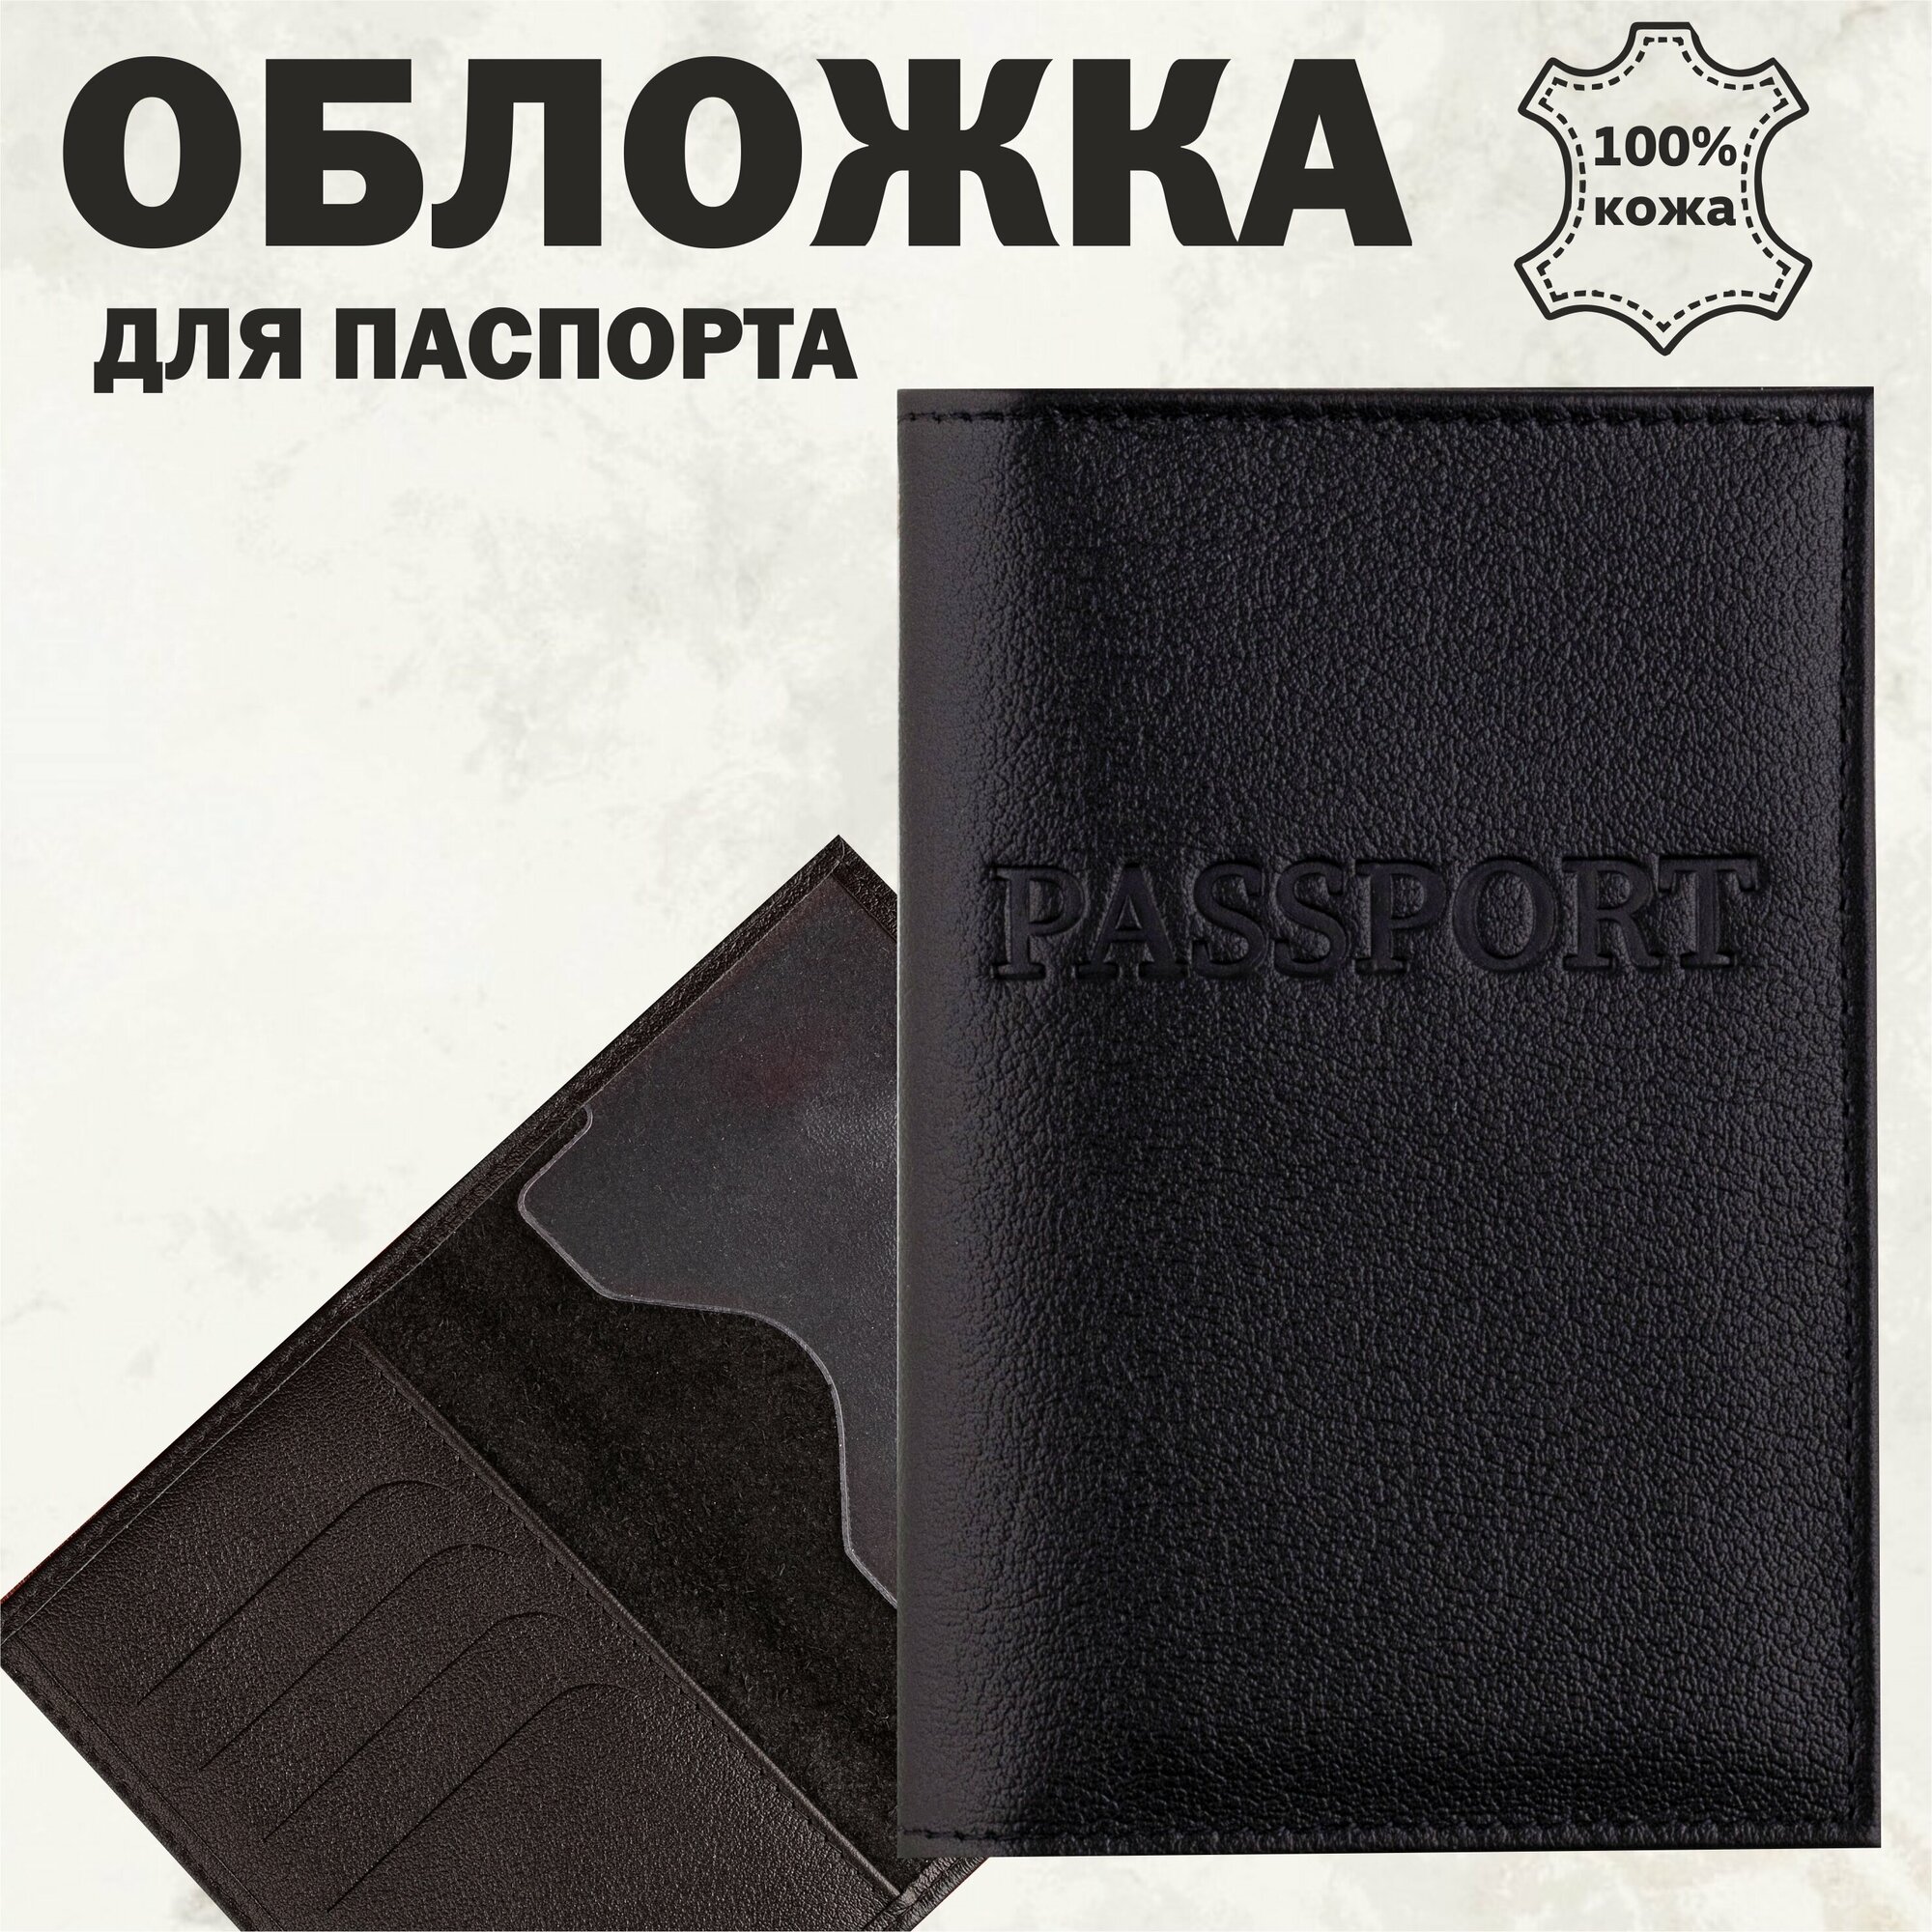 Подарок мужчине в подарочной деревянной коробке: кожаный ремень, обложка на паспорт, визитница, ручка, натуральная кожа